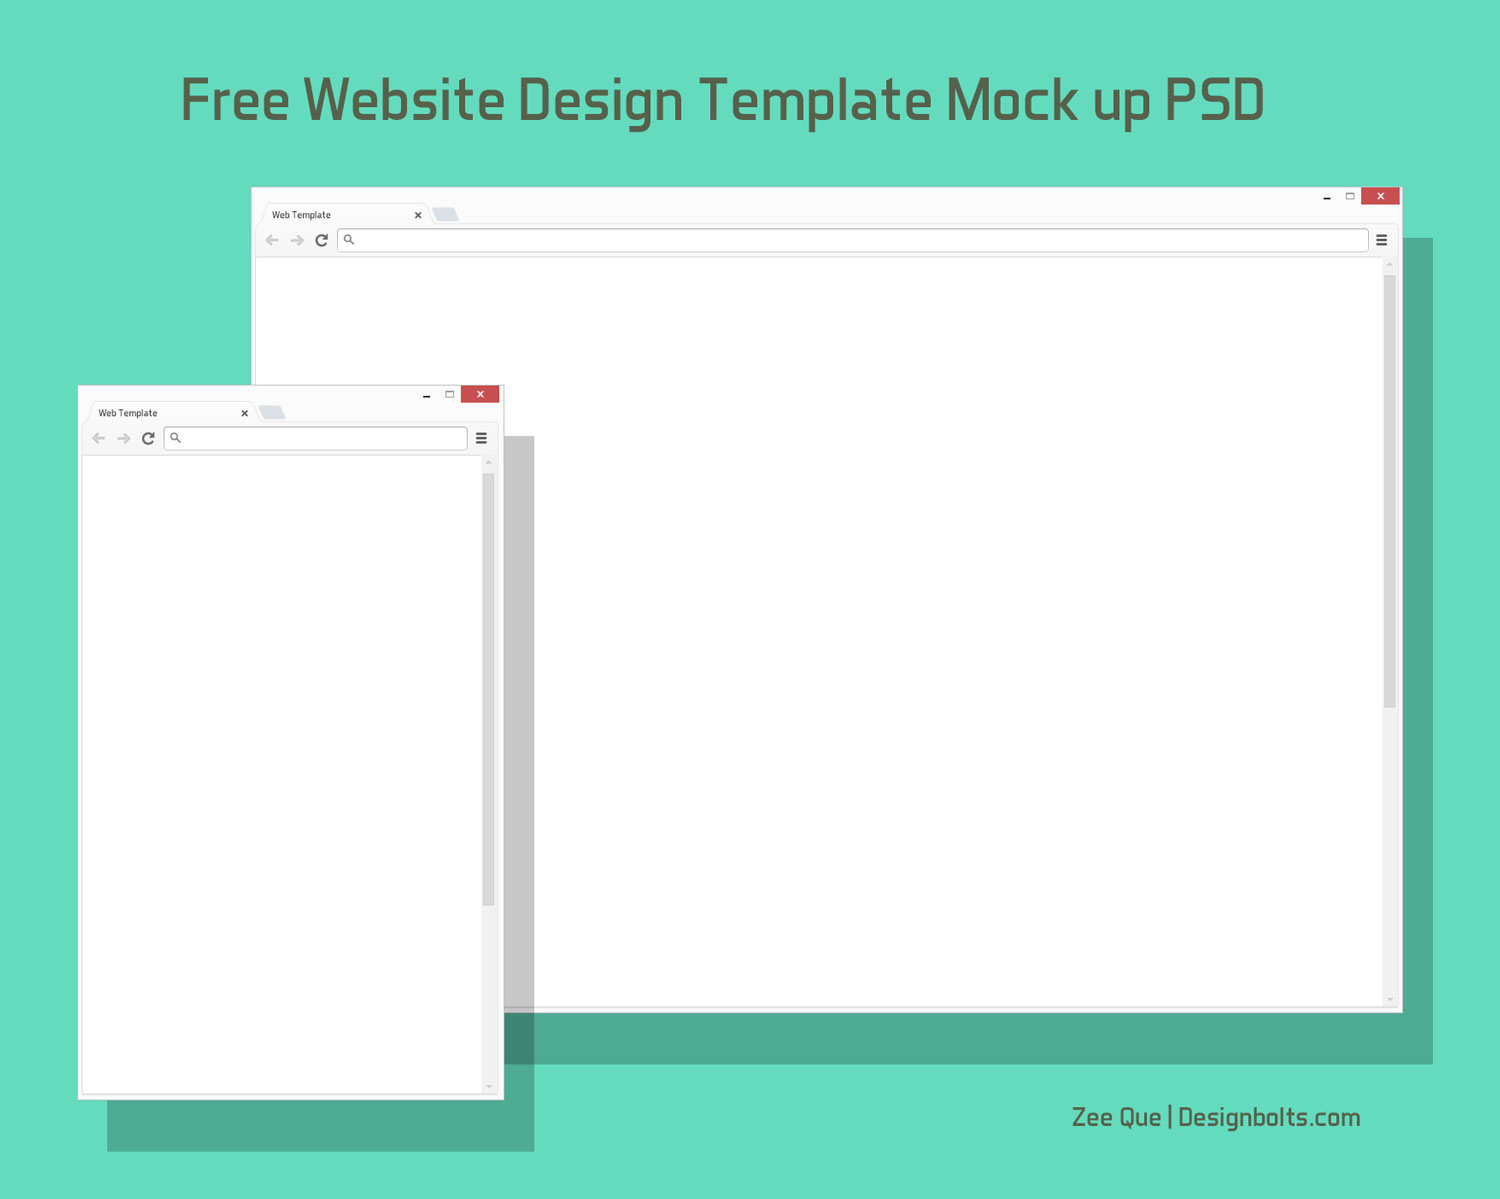 Free Browser Website Design Template Mock Up Psd